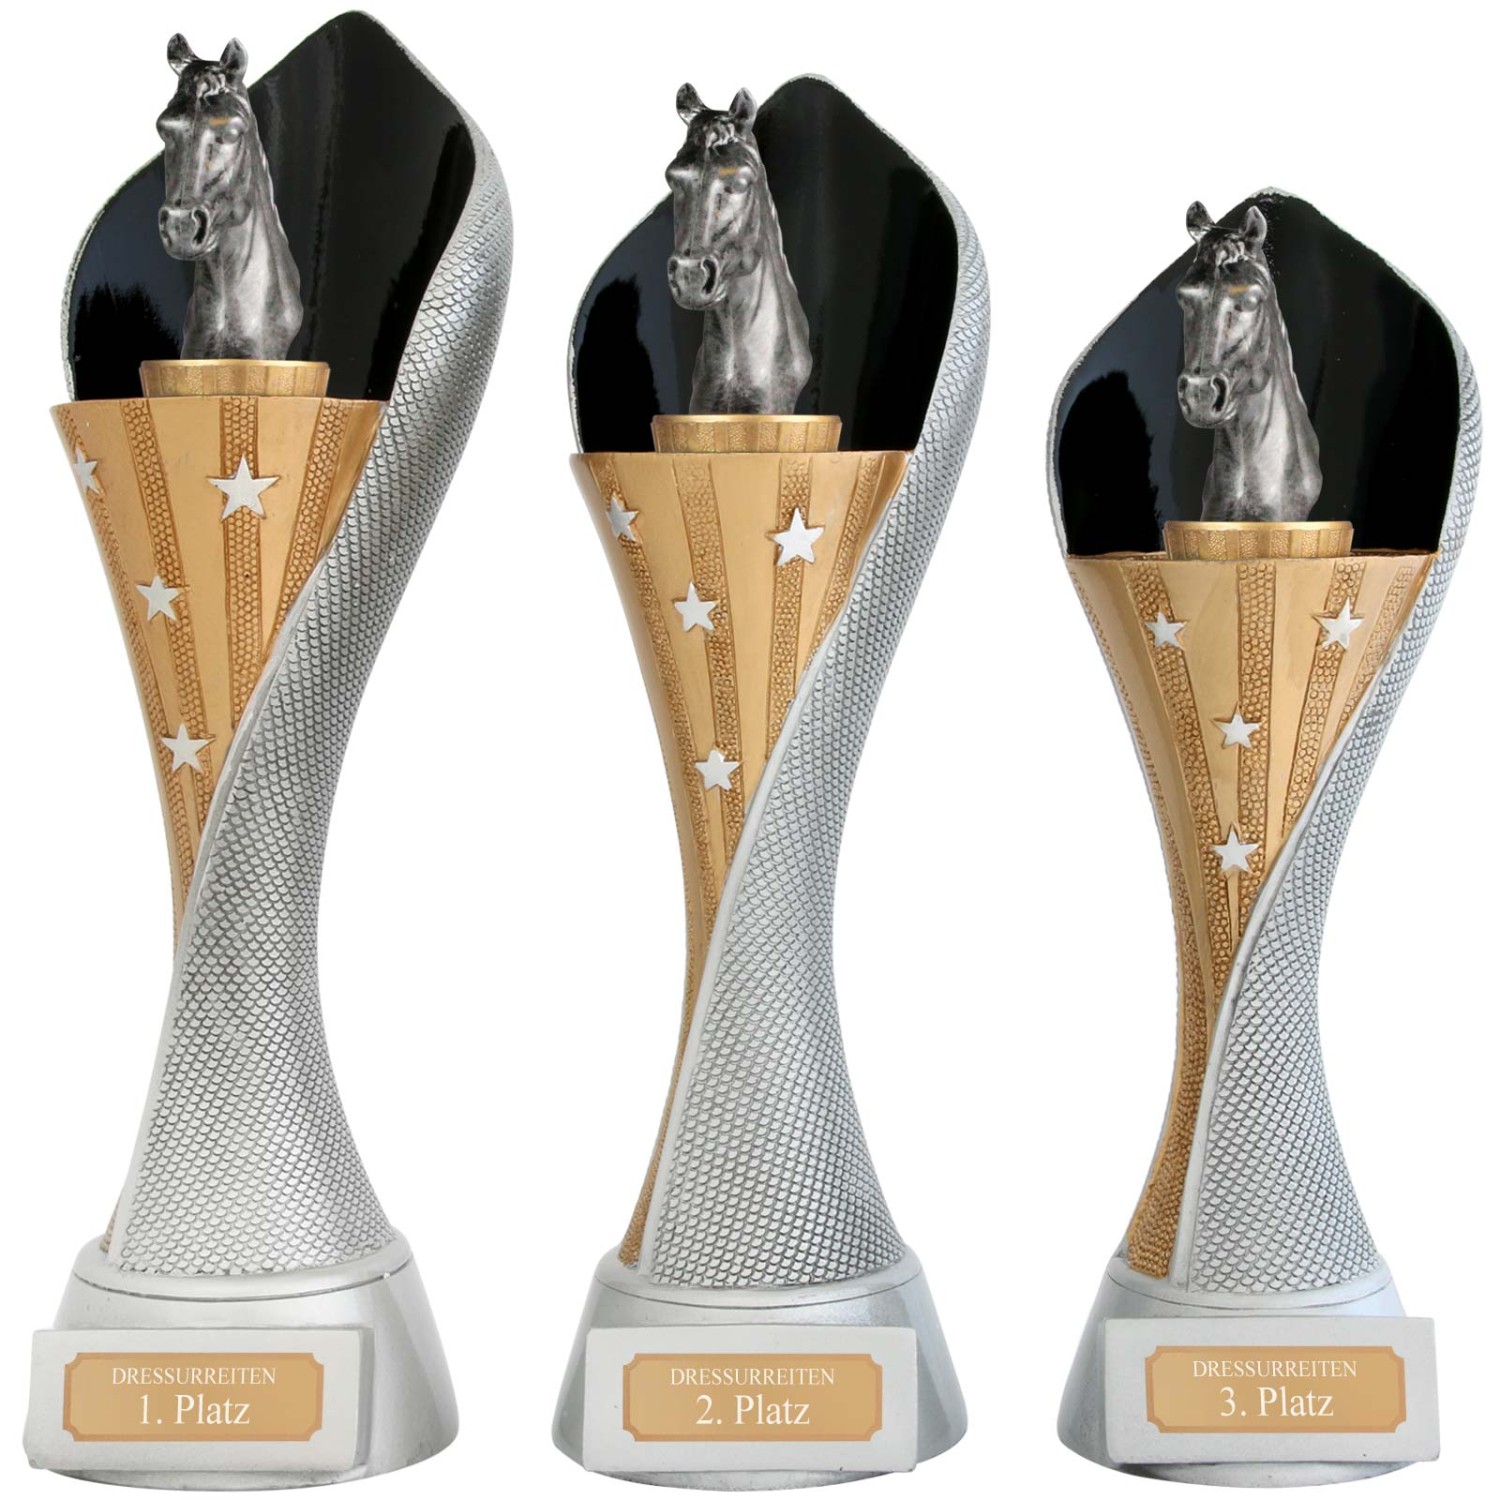 0. Foto Pokal Reiten Pferde Serie AUXON Trophäe 3 Größen mit Gravur (Größe: Set je 1x S, M und L)